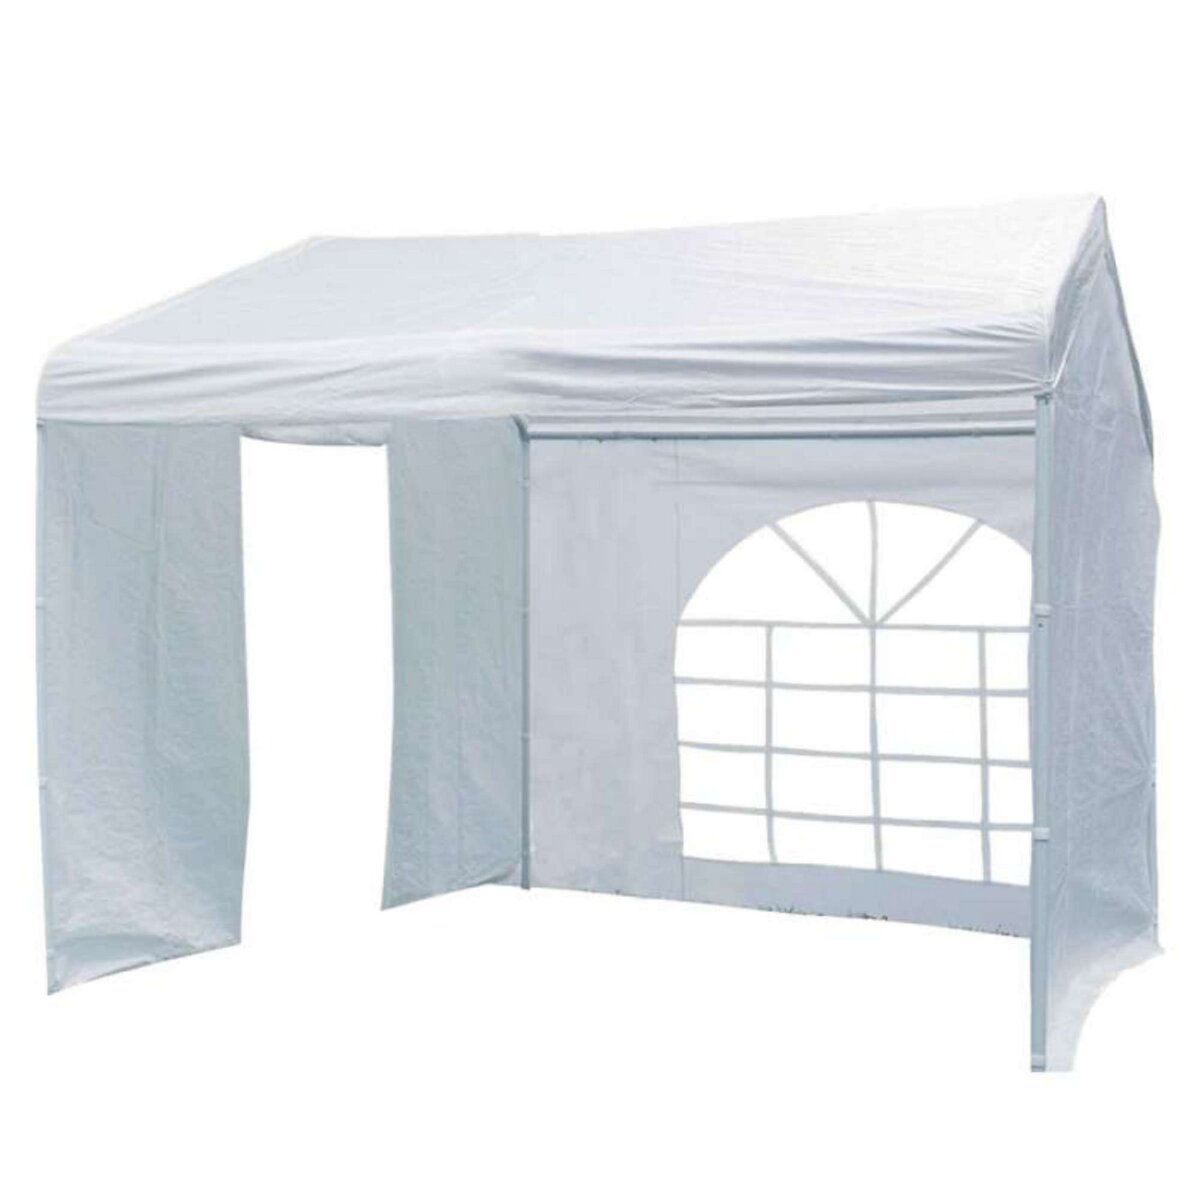  Tente de réception Luxe blanche avec côtés 3 x 3 m